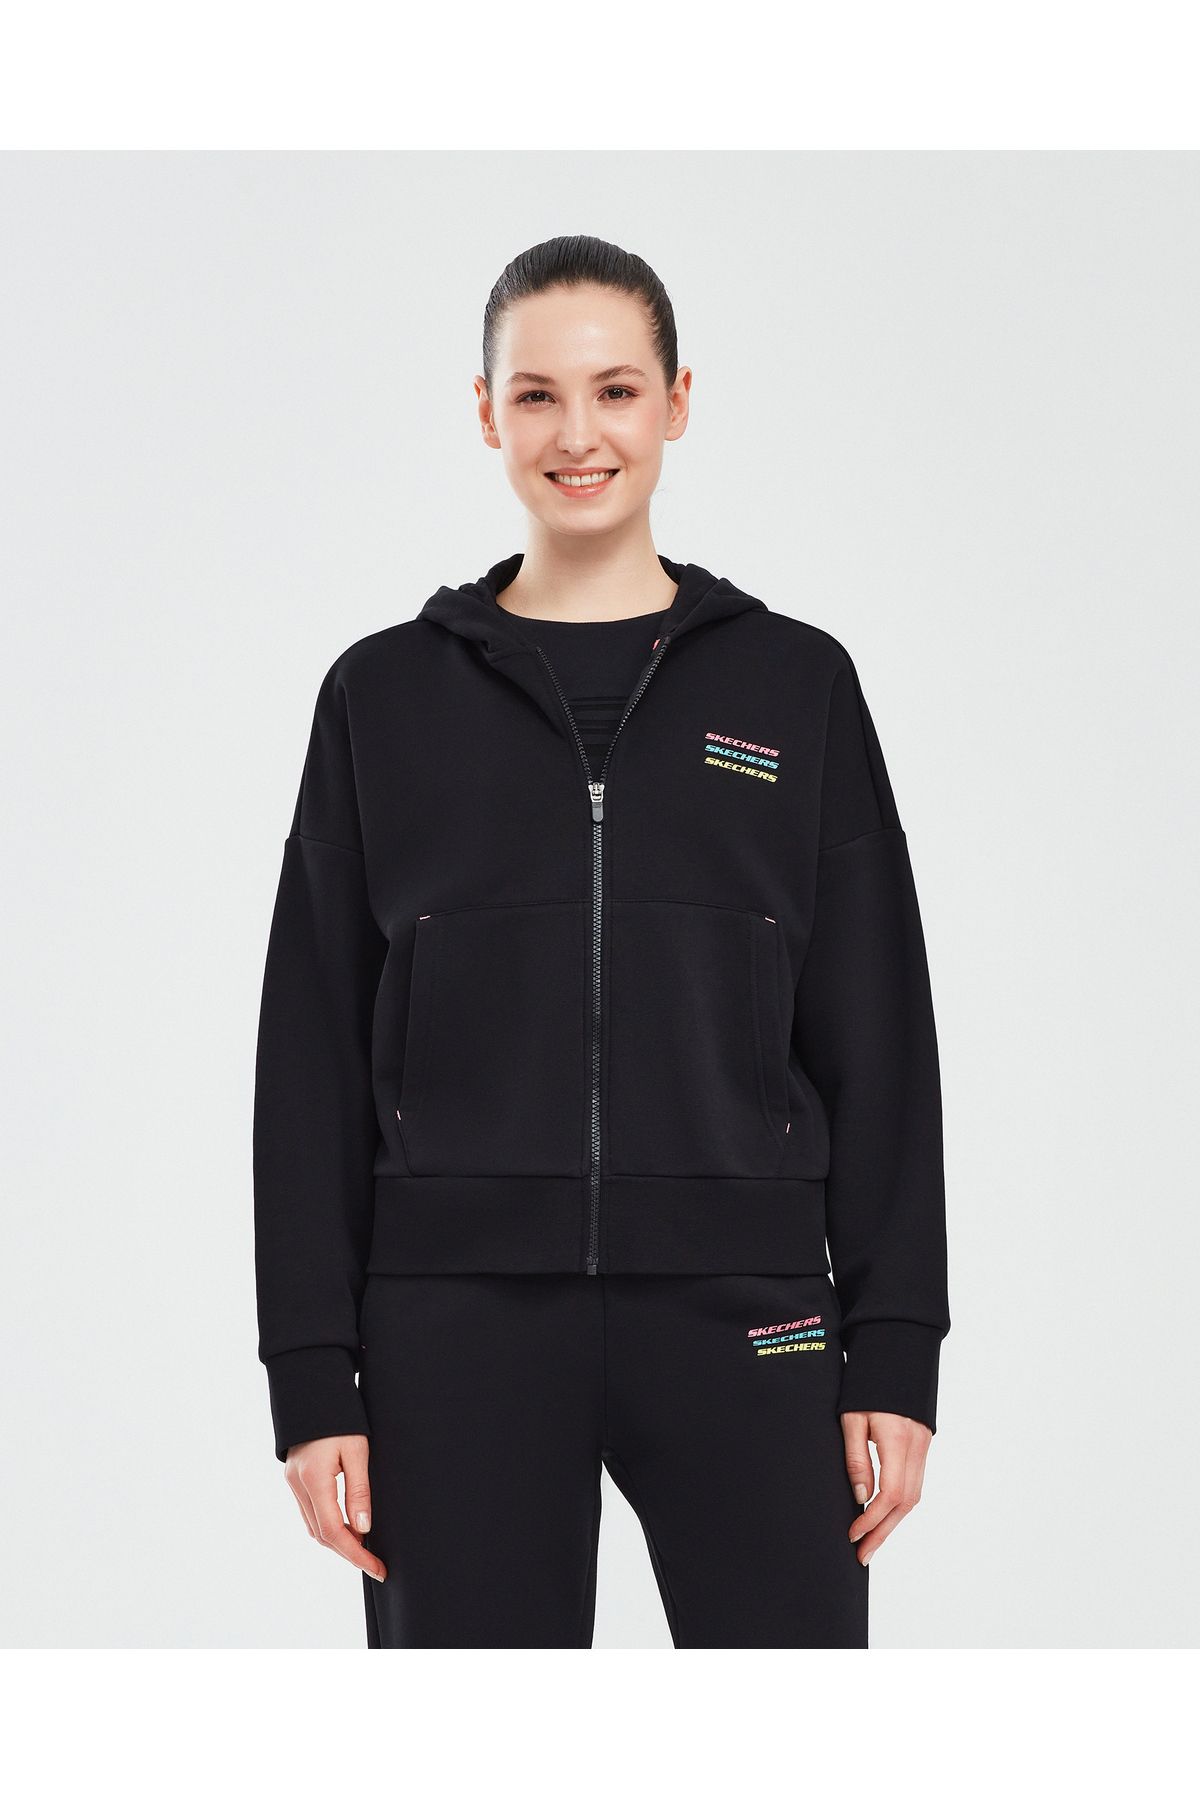 Skechers Essential W Full Zip Hoodie Sweatshirt Kadın Siyah Sweatshirt S232242-001-A